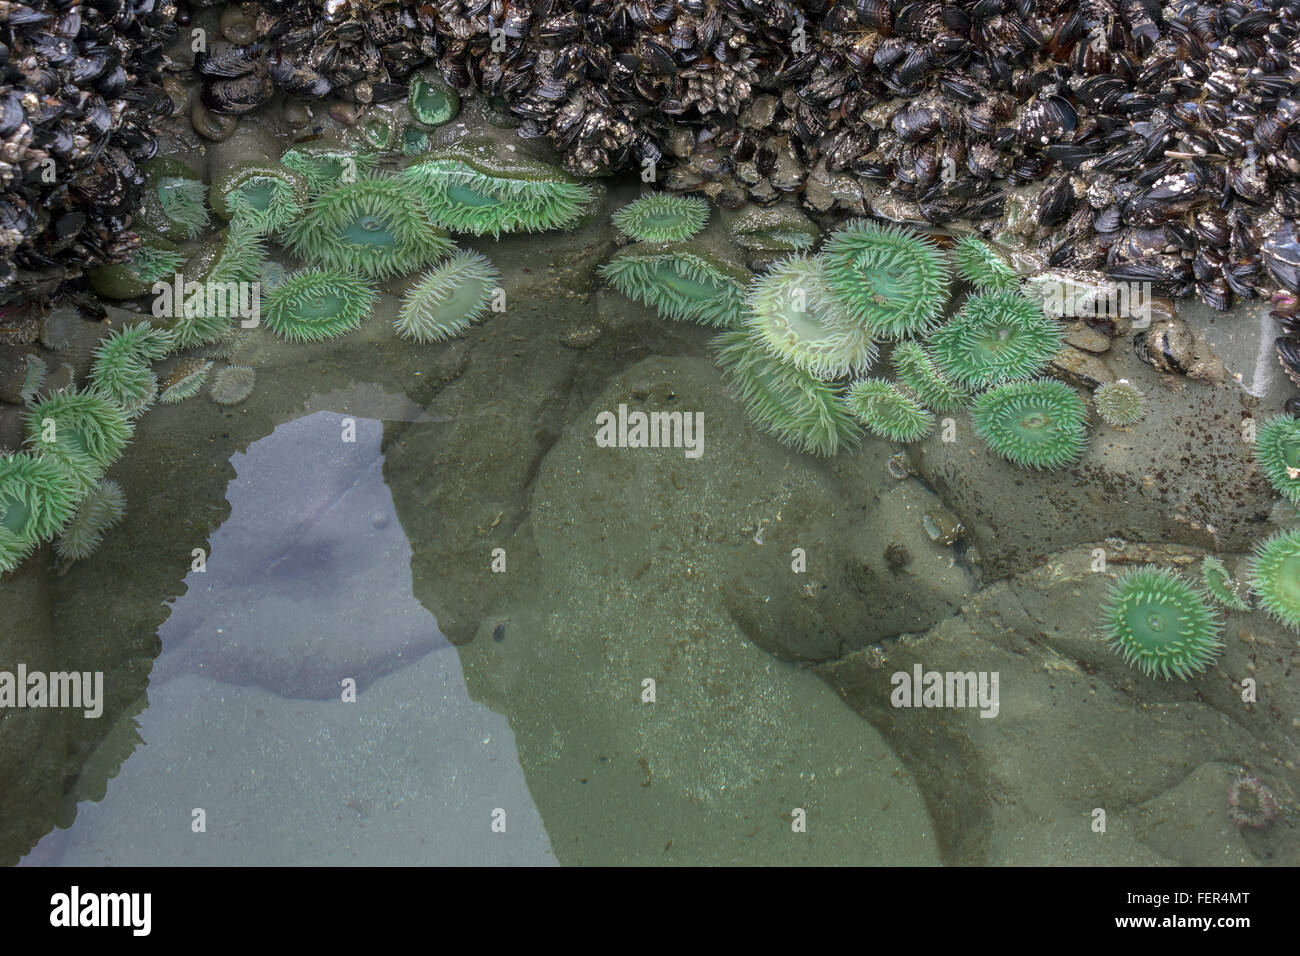 Reflecting pool with green anemones, Chesterman Beach, Tofino, British Columbia Stock Photo